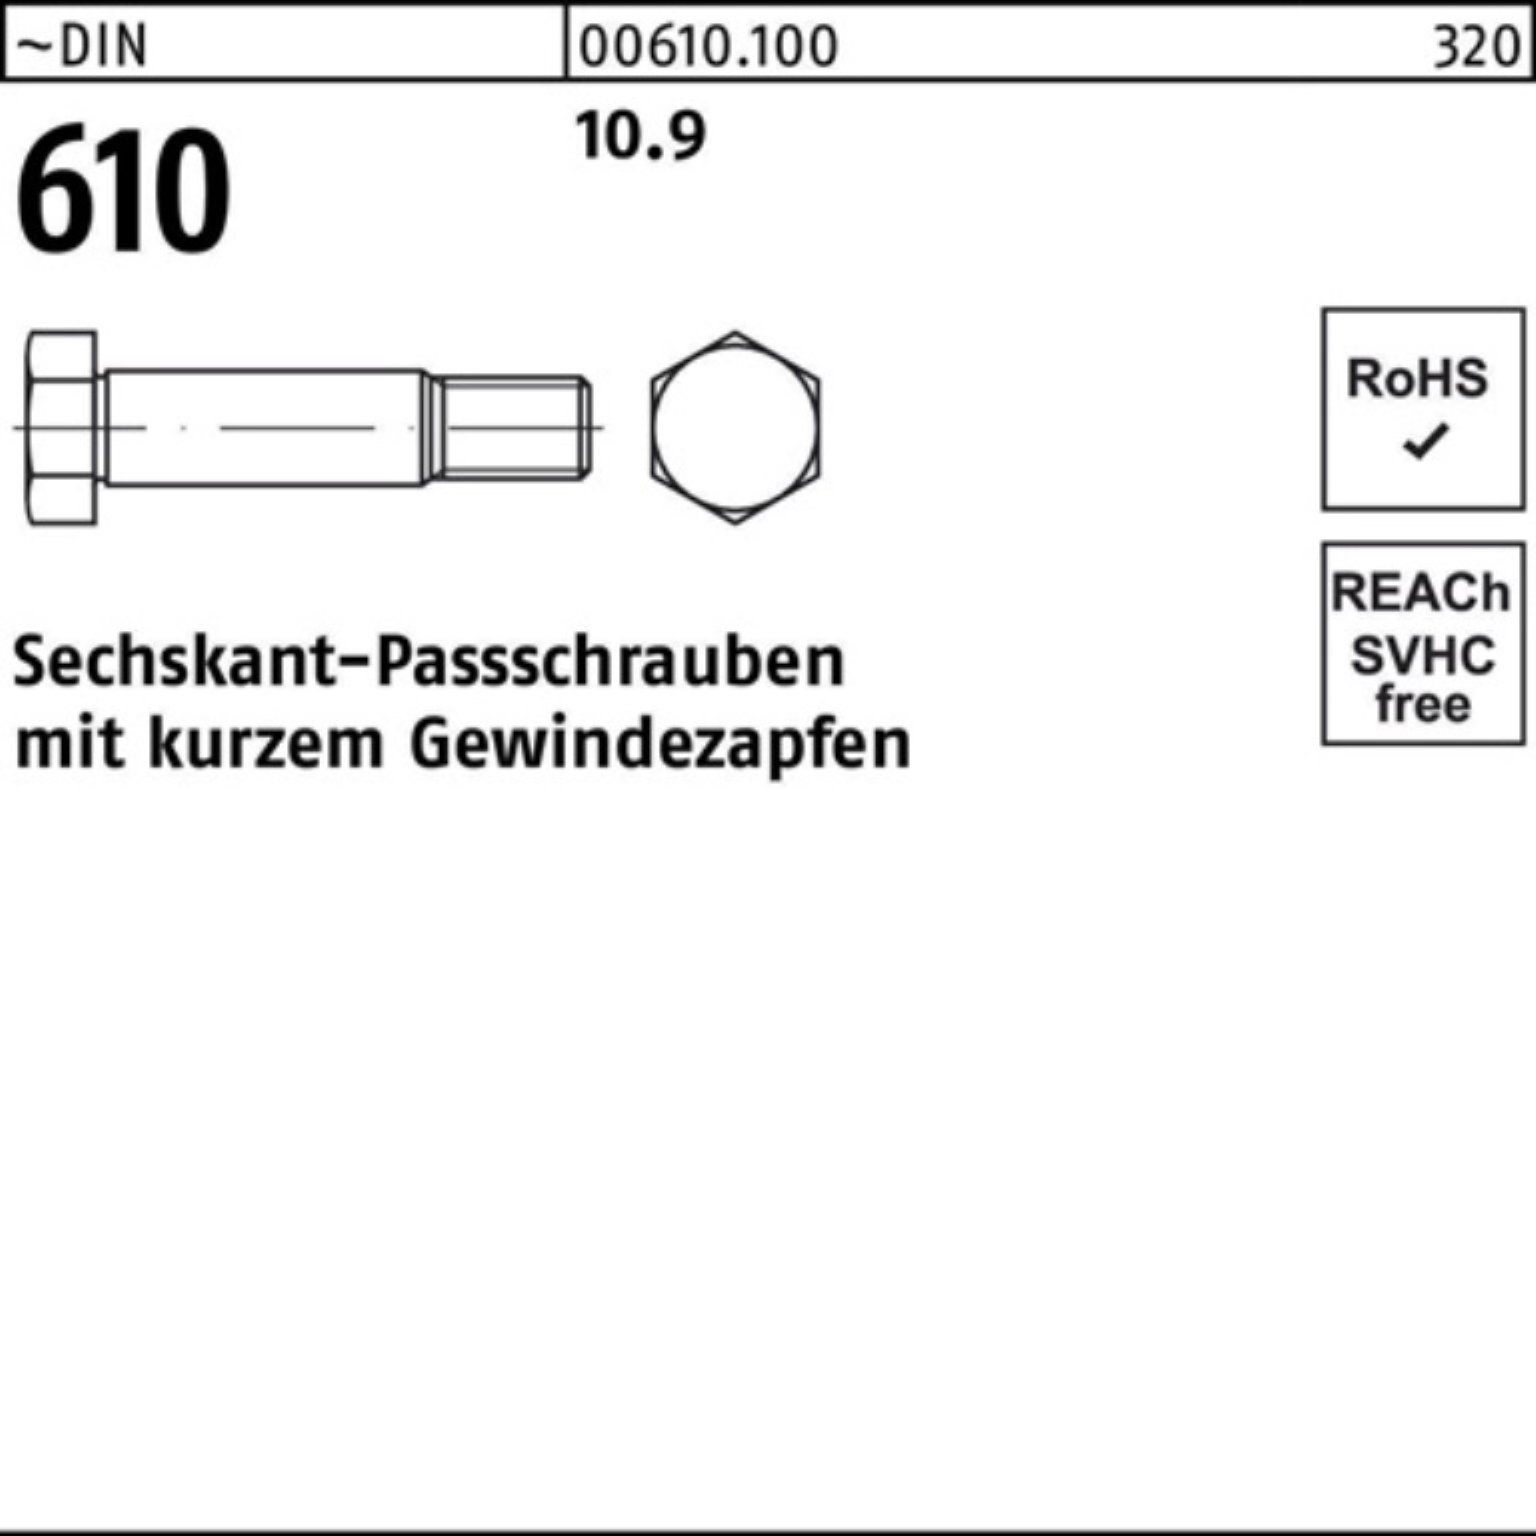 Sechskantpassschraube 610 55 DIN 100er Reyher M10x Schraube kurzem Gewindezapfen Pack